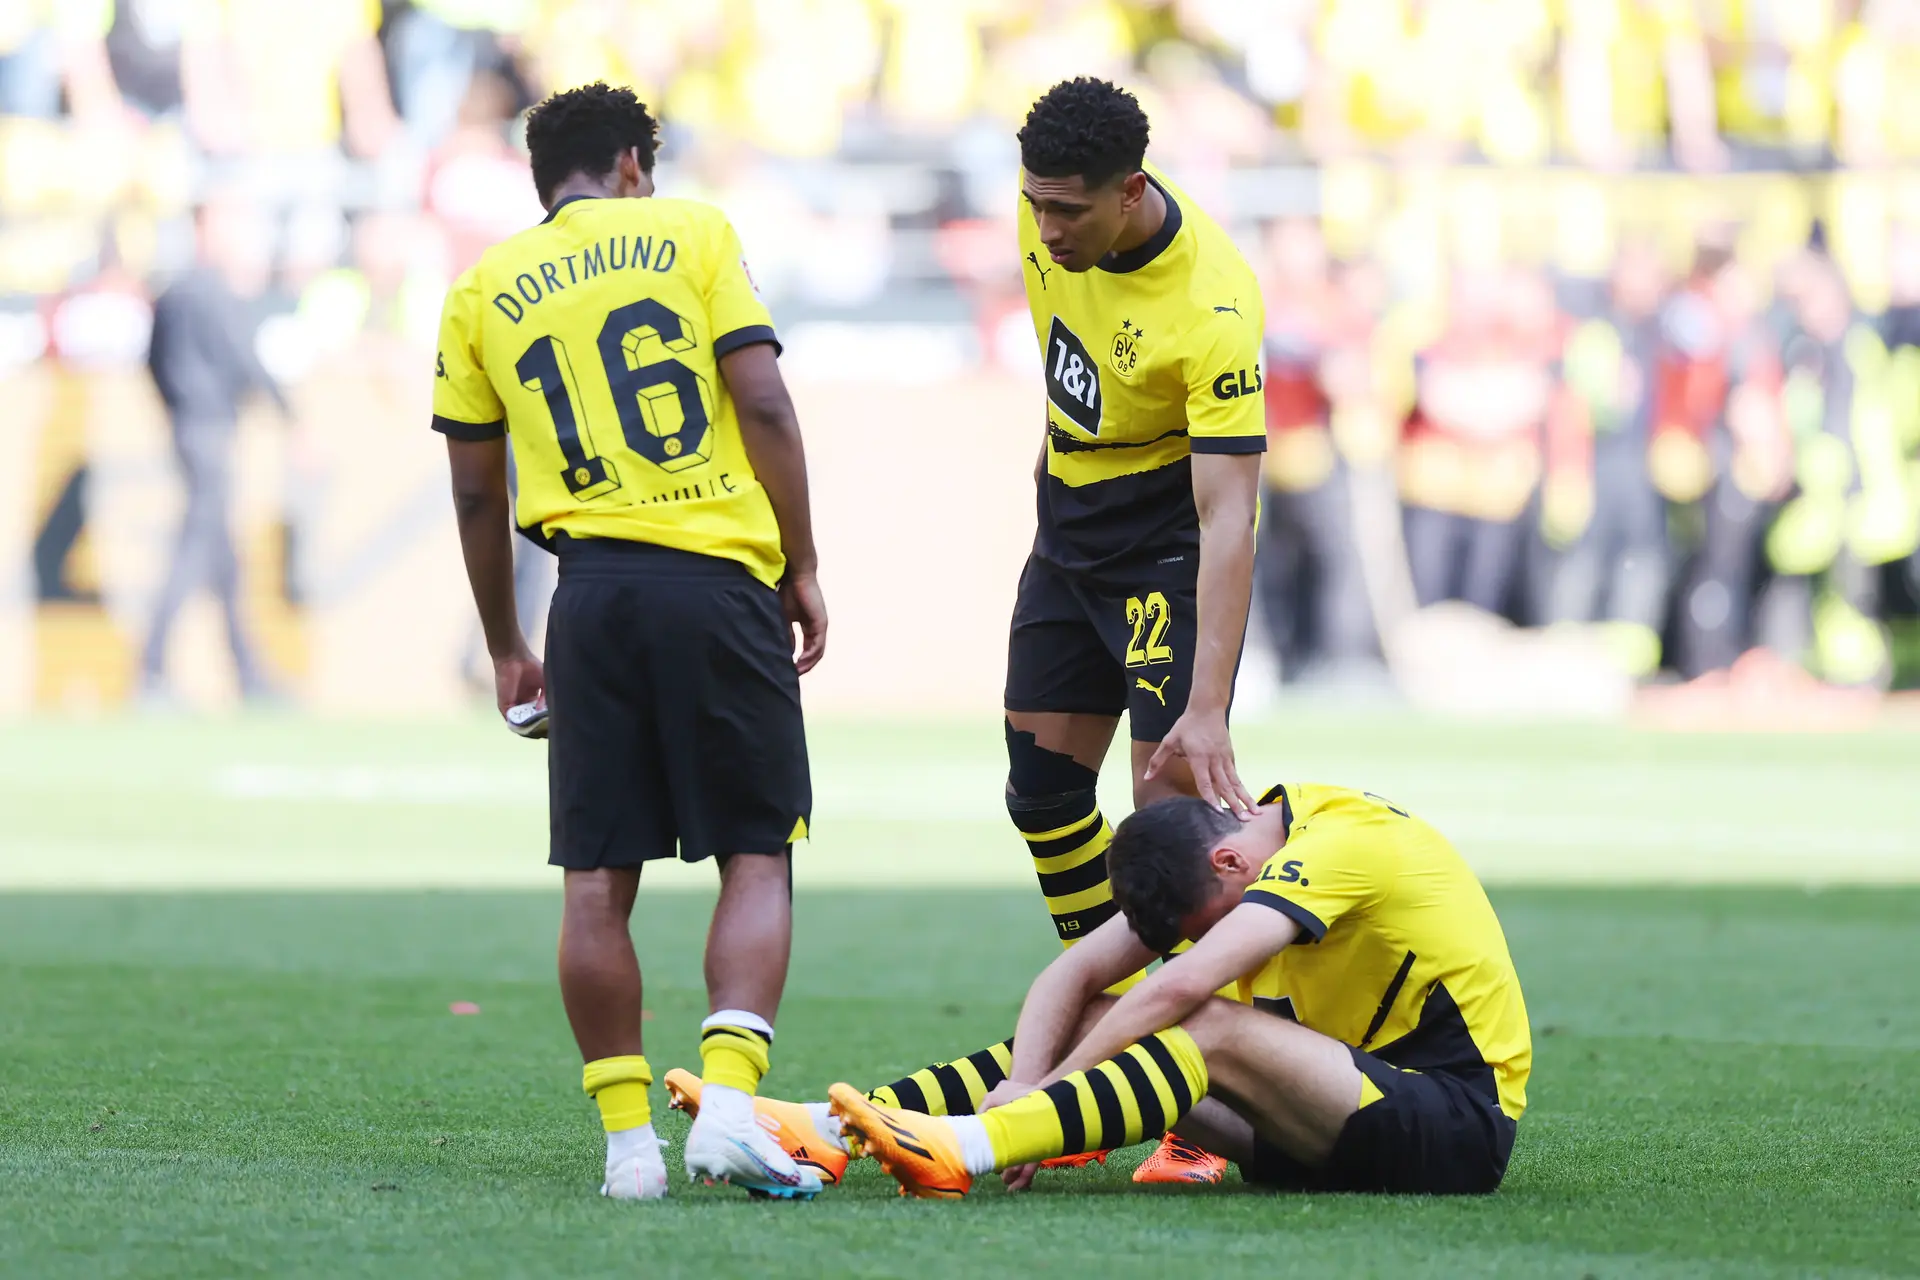 Marco Reus on Borussia Dortmund  Caras do futebol, Futebol, Caras